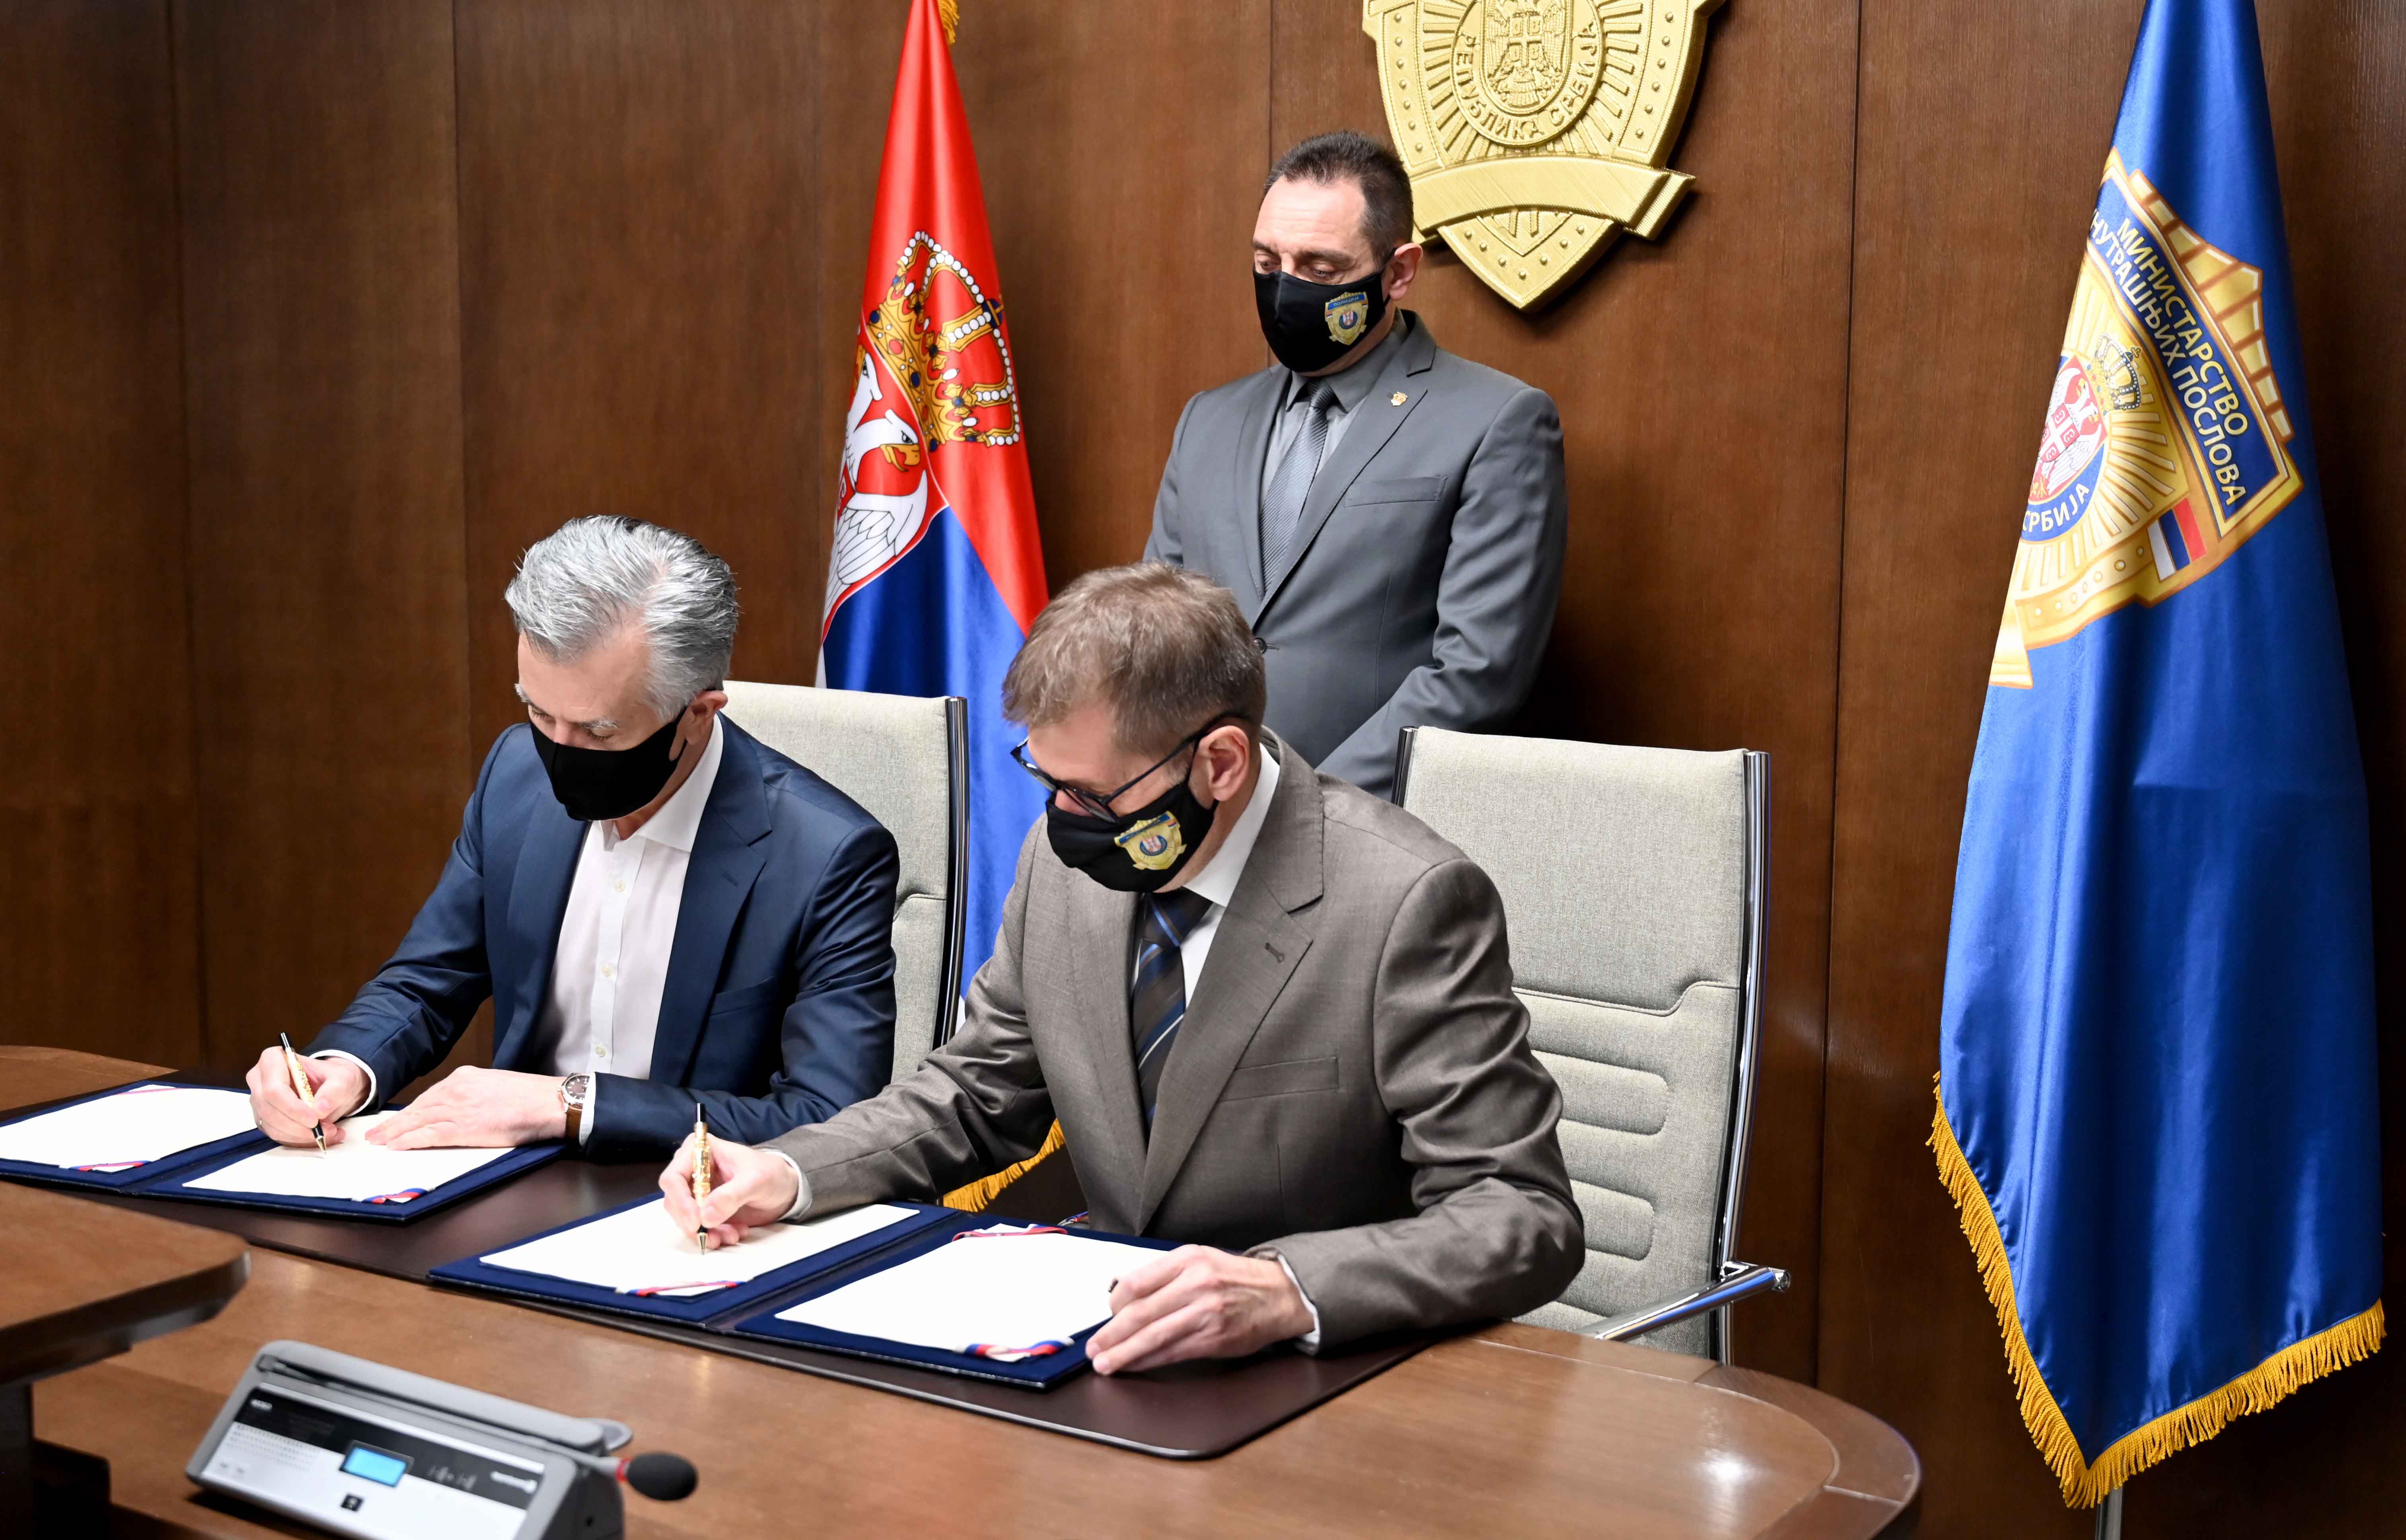 Potpisan Sporazum o saradnji Ministarstva unutrašnjih poslova i Udruženja osiguravača Srbije